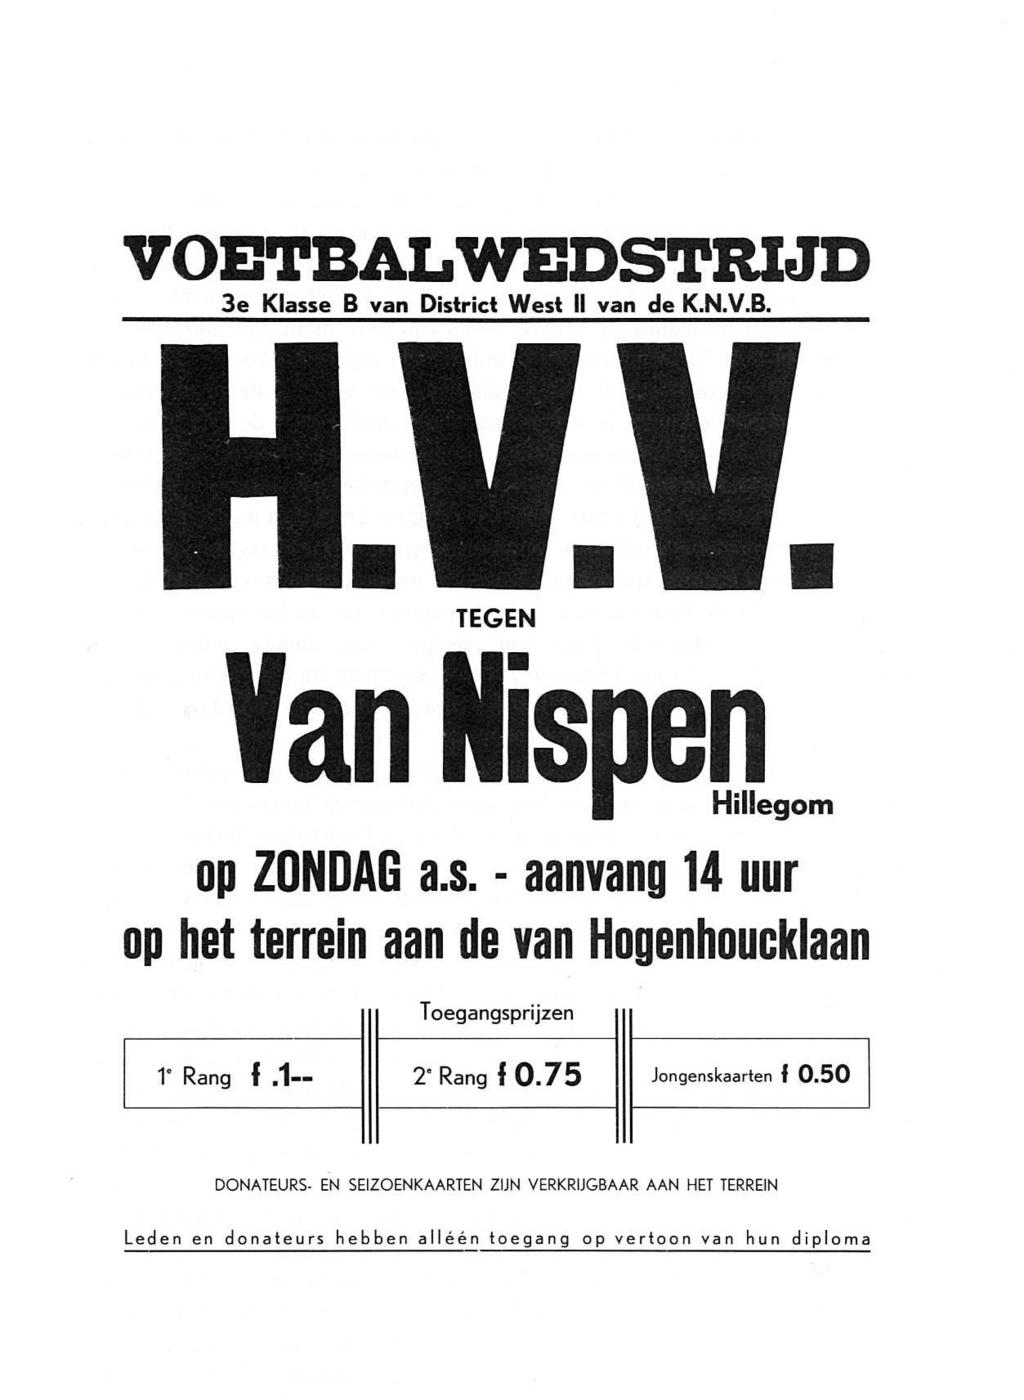 - 53 - Aanplakbiljet van de voelbalwedslrijd HVV-Van Nispen, opgericht door